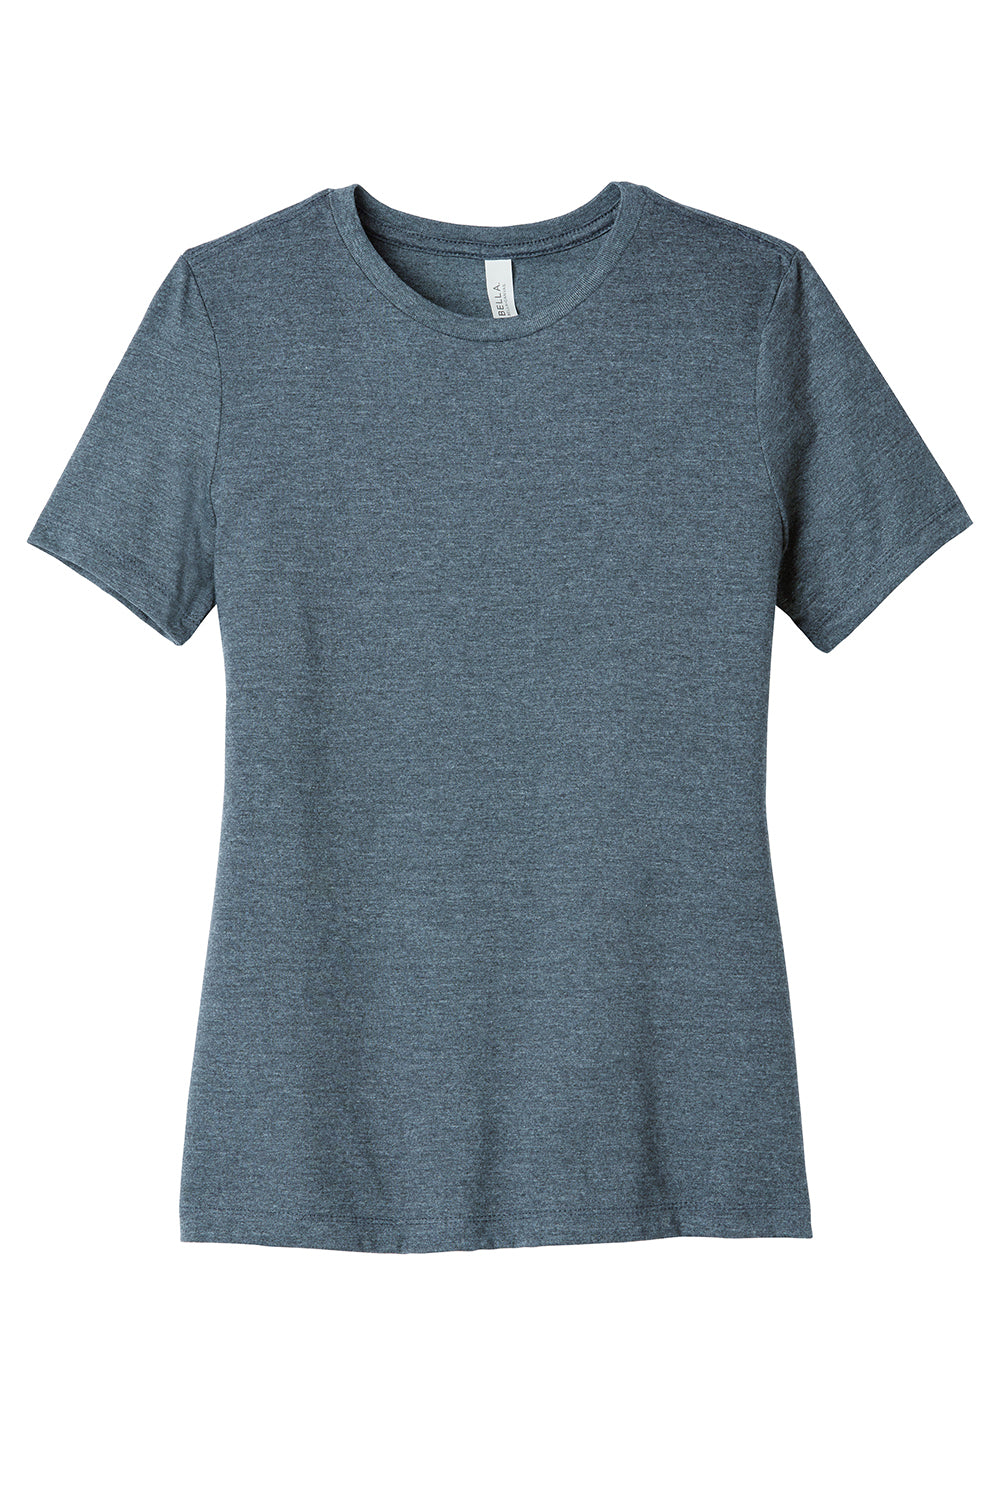 Bella + Canvas BC6400CVC/6400CVC Womens CVC Short Sleeve Crewneck T-Shirt Heather Slate Blue Flat Front